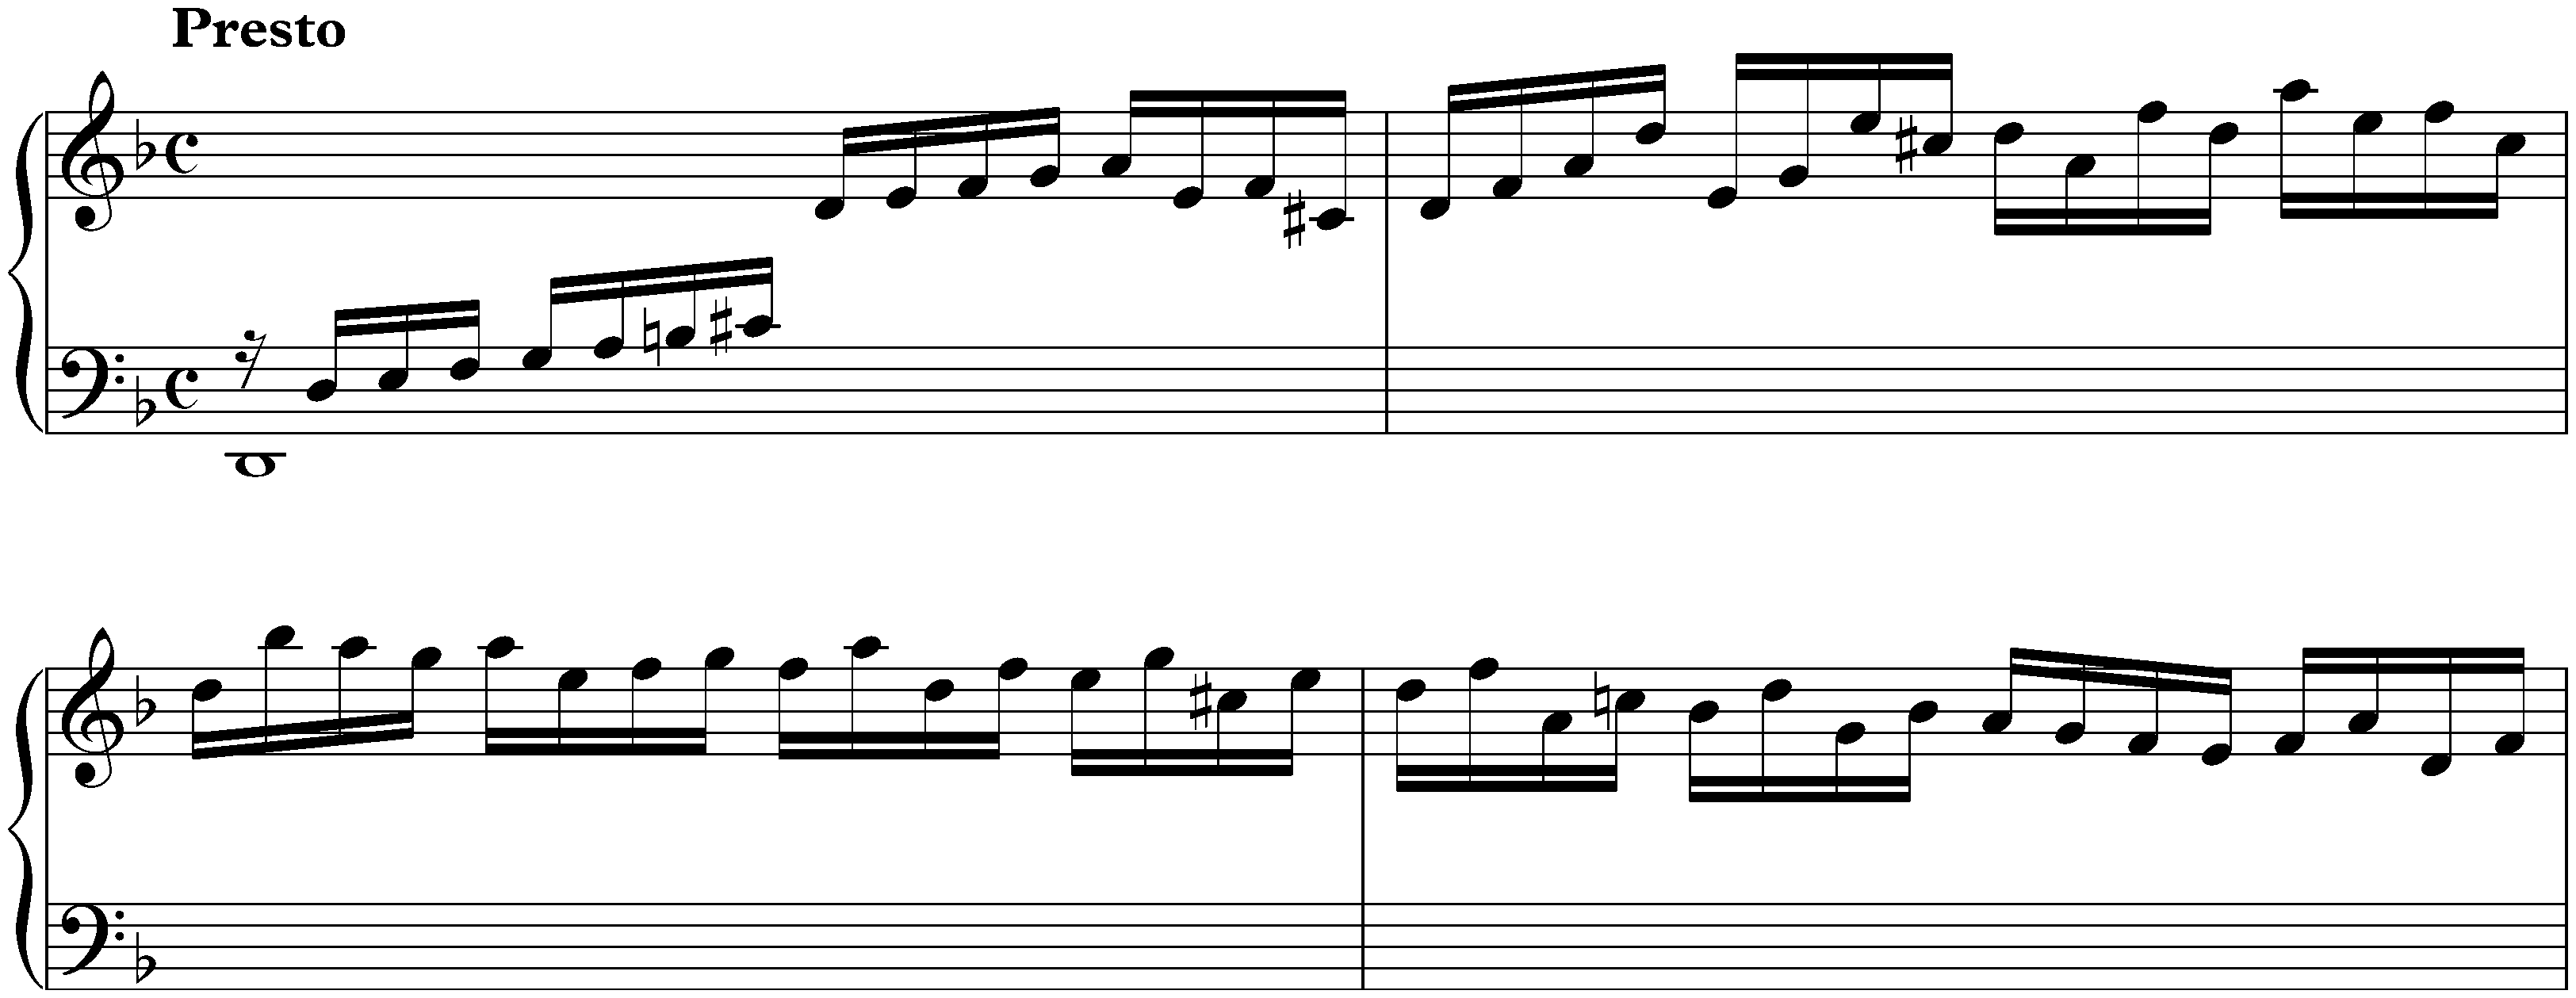 Suite in D minor, HWV 428; 1. Prélude